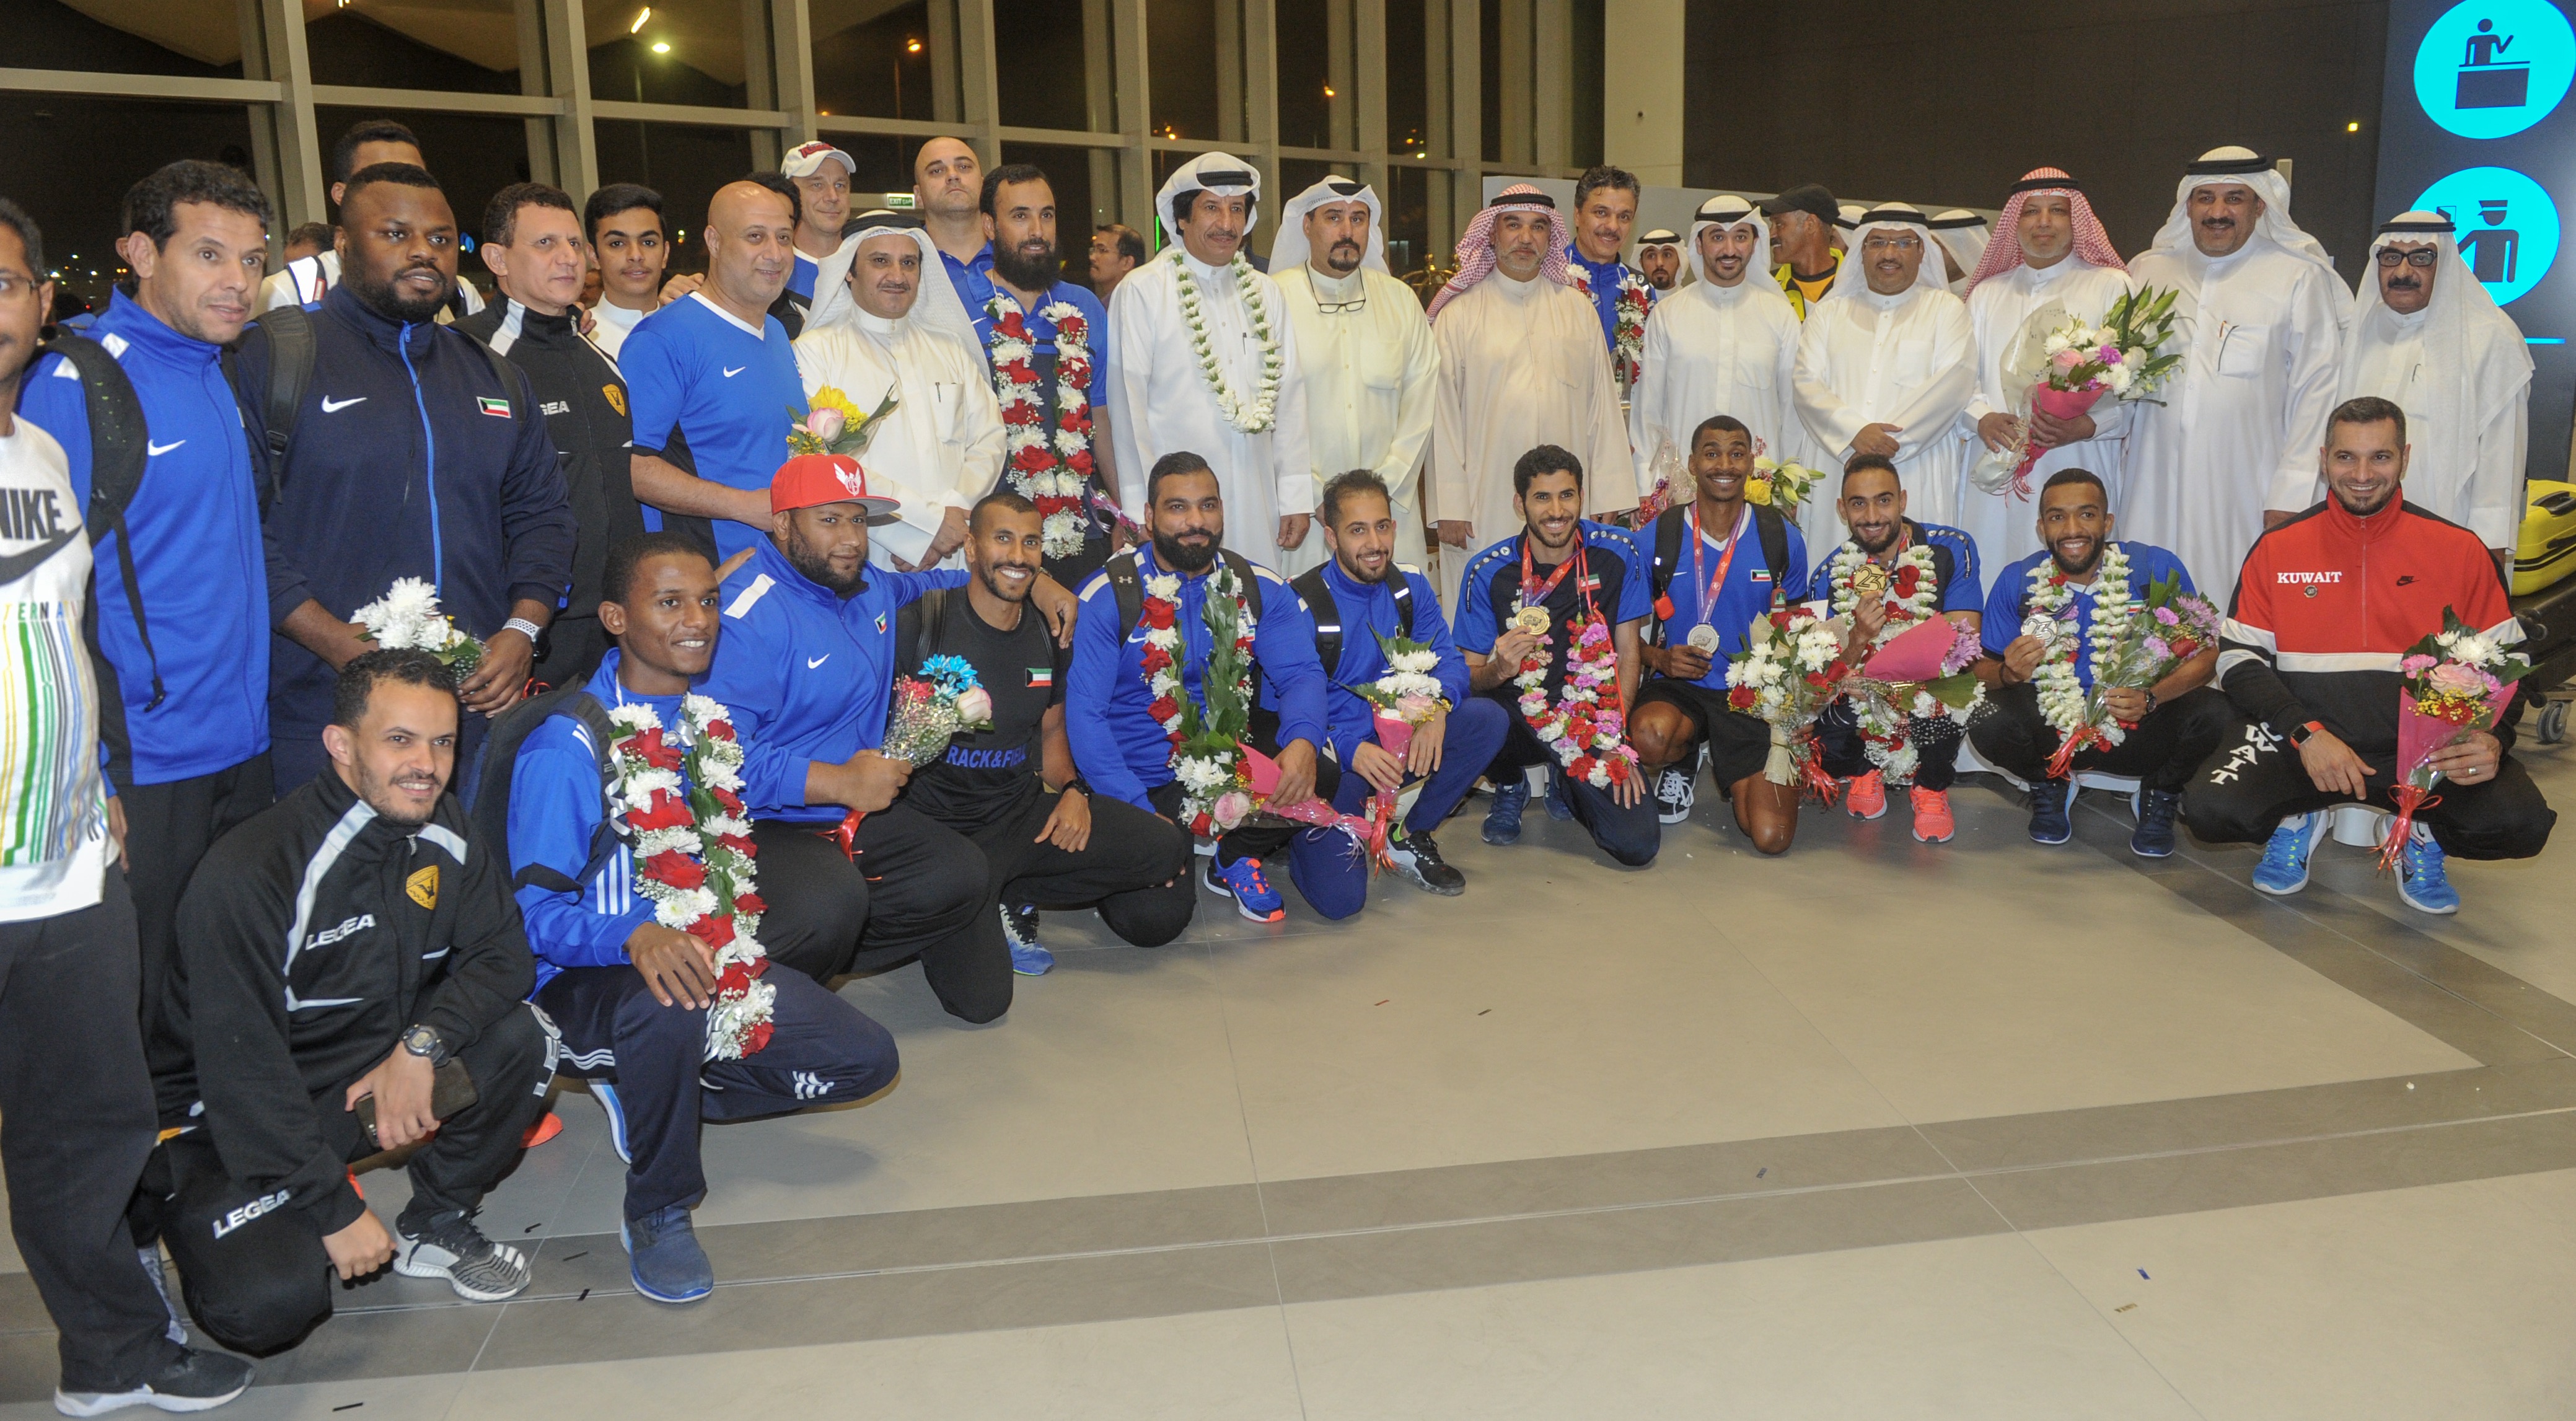 منتخب الكويت لالعاب القوى العائد من مشاركة مميزة بالبطولة الآسيوية ال 23 لالعاب القوى